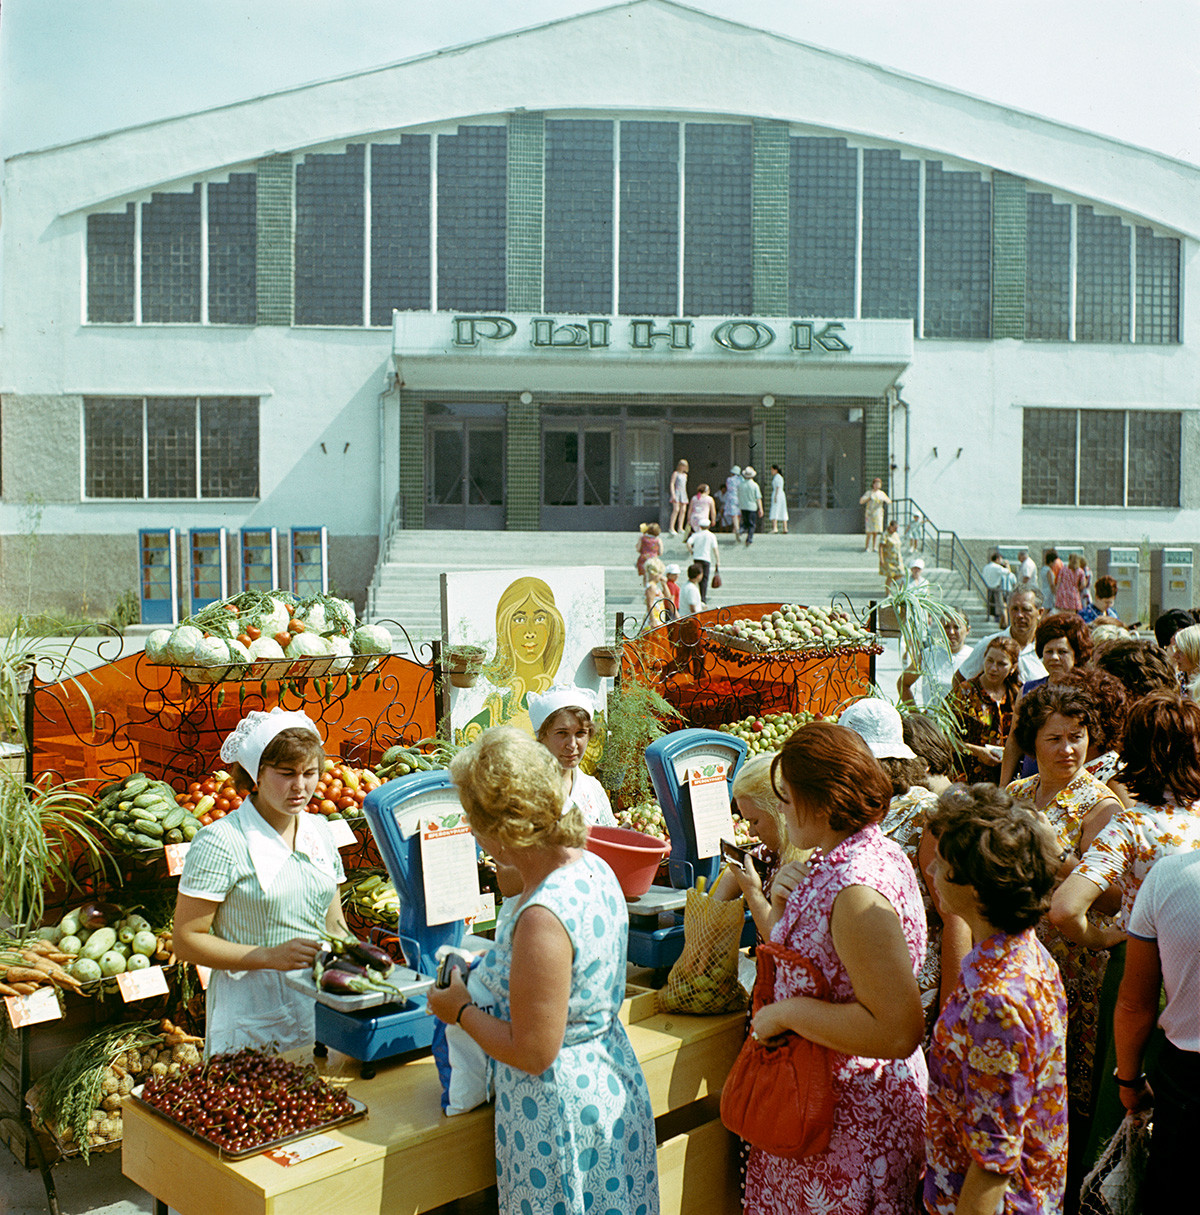 Trgovina s sadjem in zelenjavo na ulici v mestu Jevpatorija, Krim, 1979

